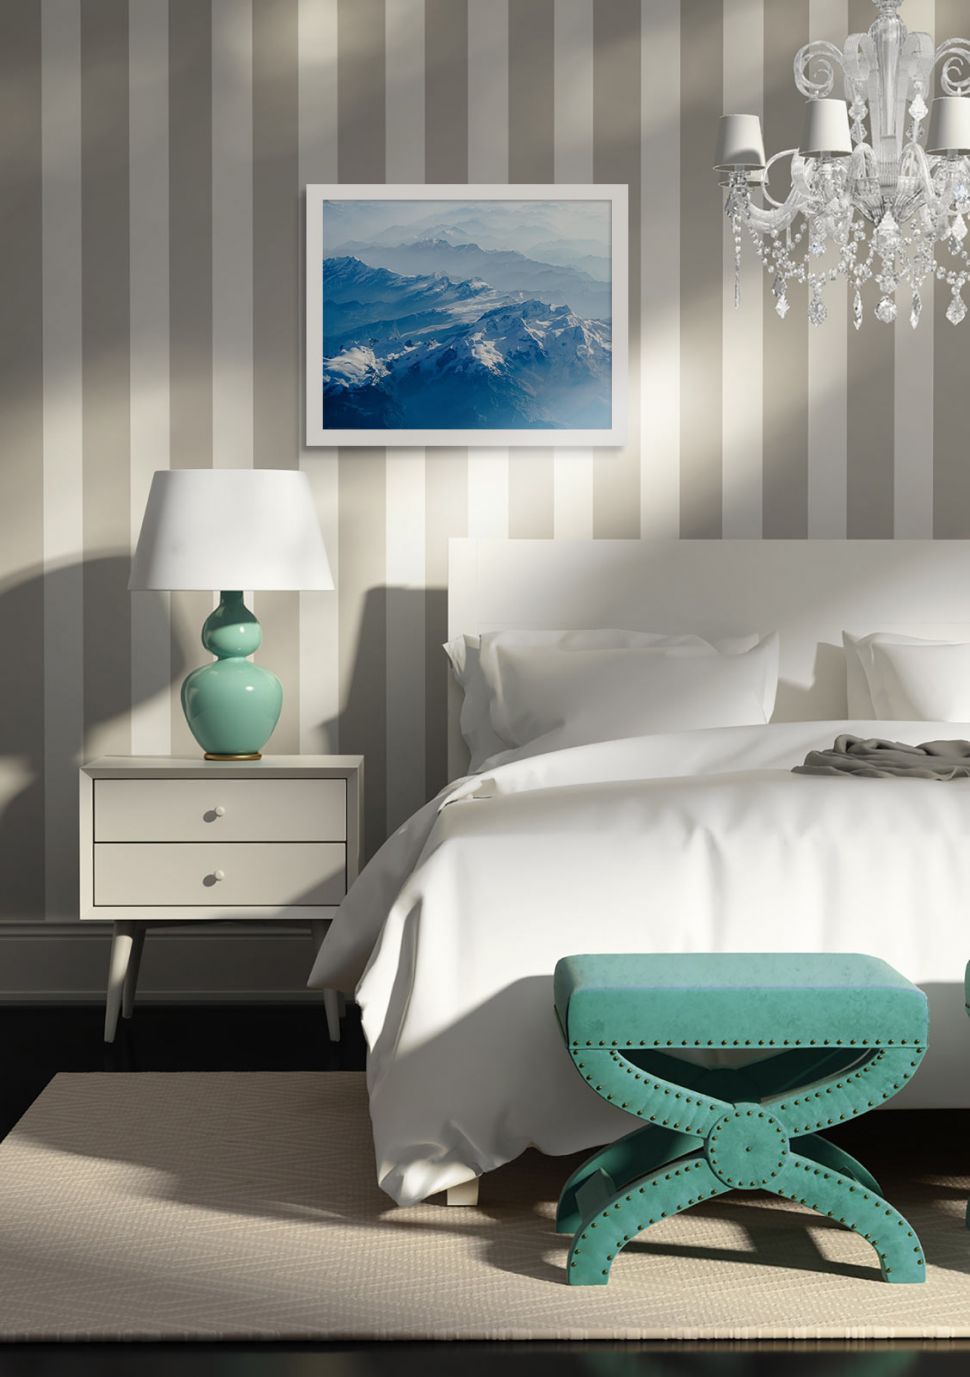 Plakat Snowy Mountains w białej ramie powieszony w sypialni nad łóżkiem